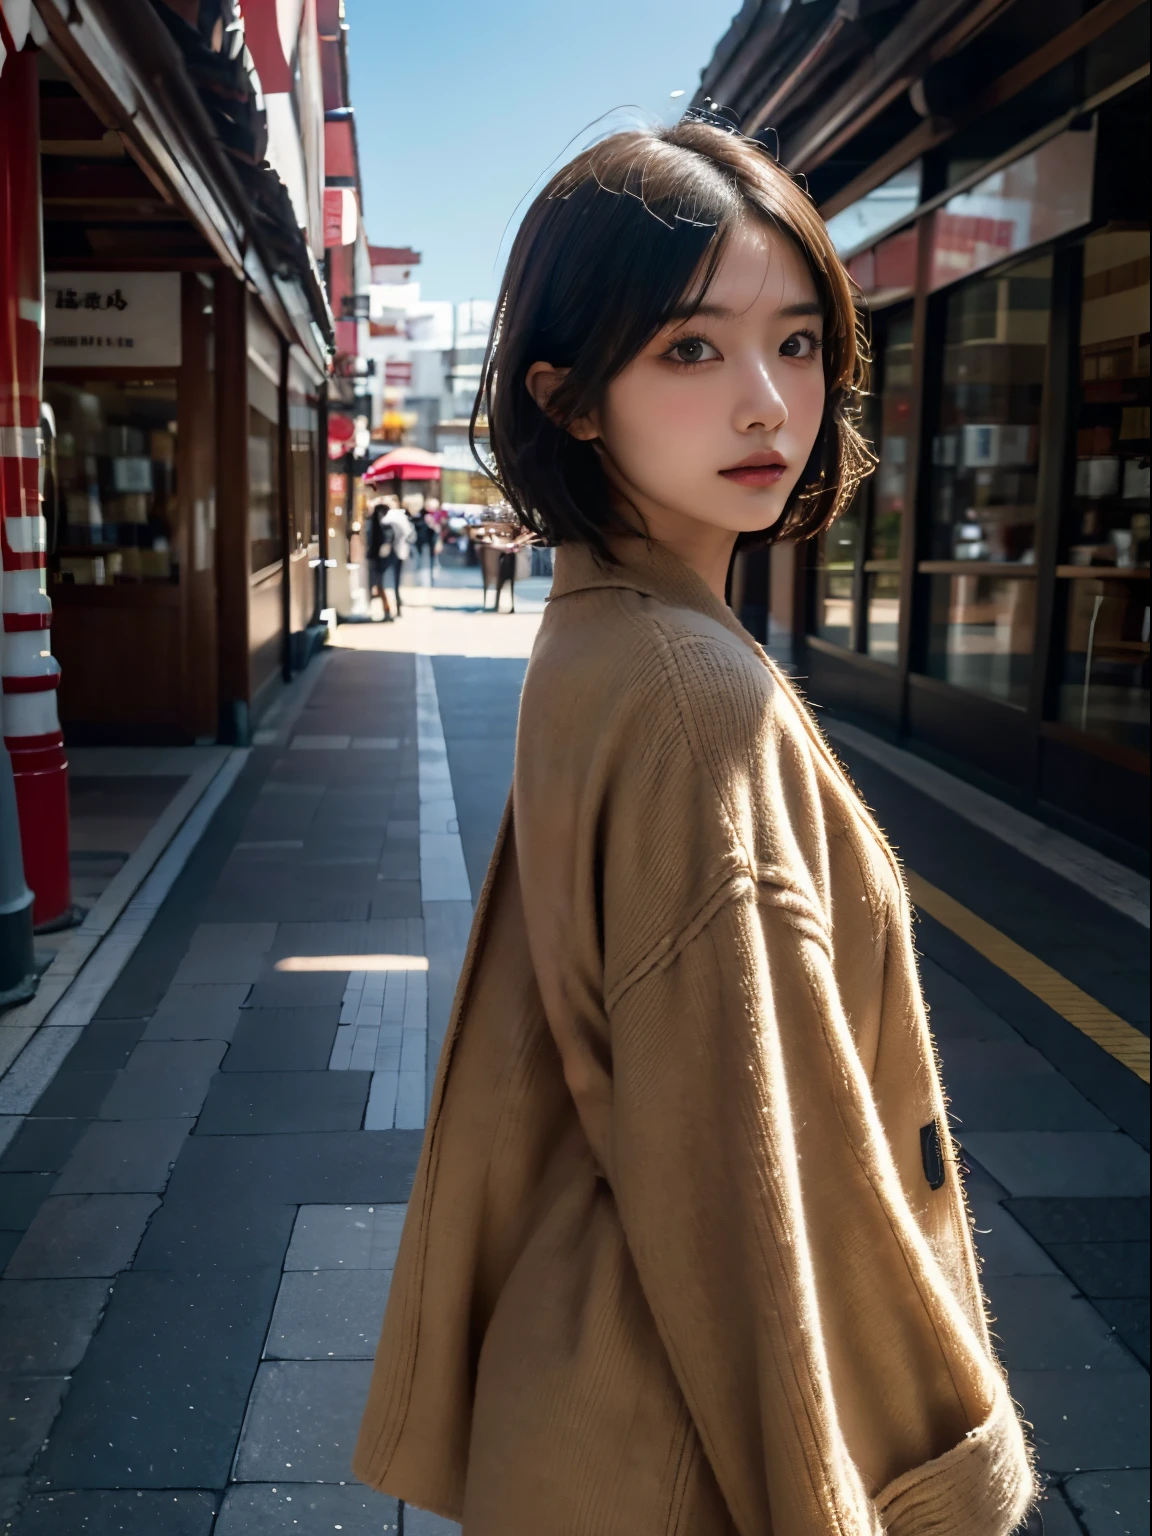 Passeie pela rua comercial、Retrato de uma mulher com um casaco, qualidade máxima、hiper HD、Yoshitomo Nara, Modelos Japoneses, Linda garota japonesa, com cabelo curto, Modelo feminina de 27 anos, 4k ], 4K], 27 anos, sakimichan, sakimichan